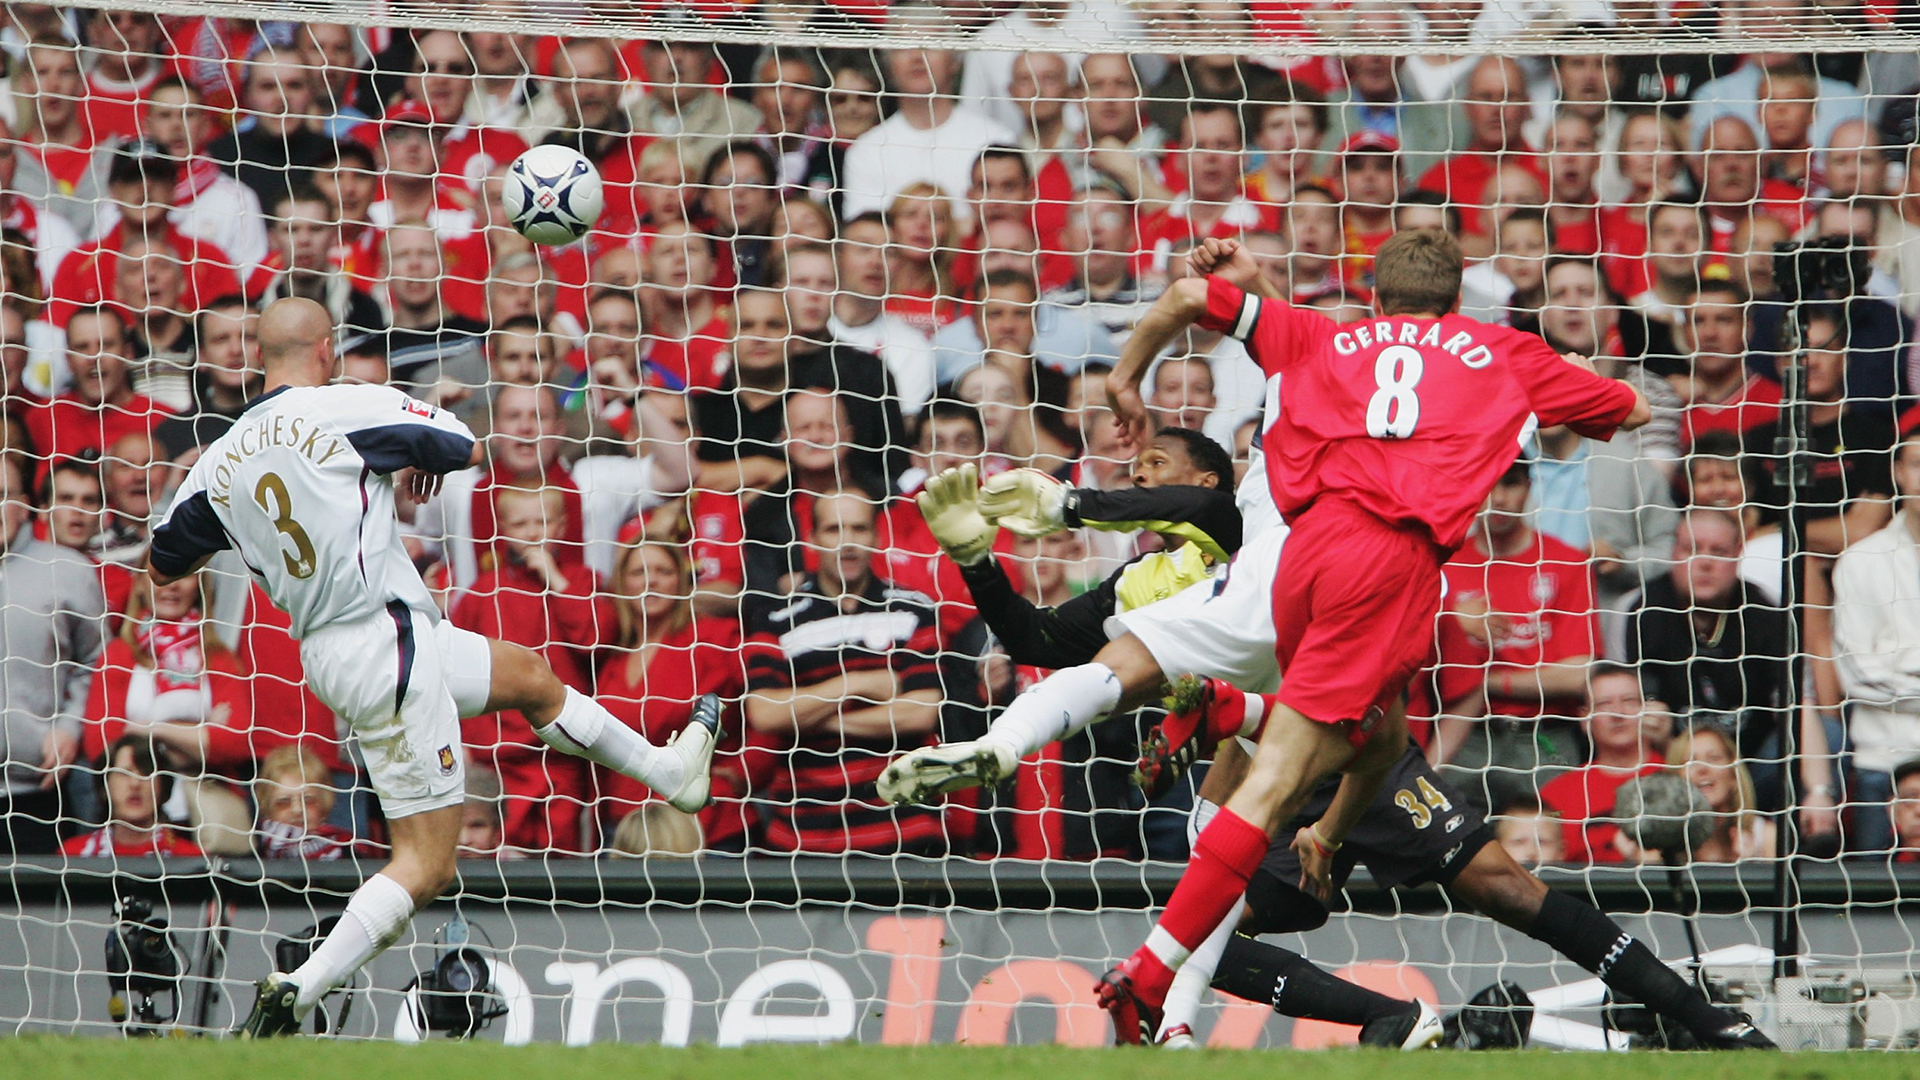 Steven Gerrard Liverpool West Ham FA Cup final 2006 - Goal.com1920 x 1080